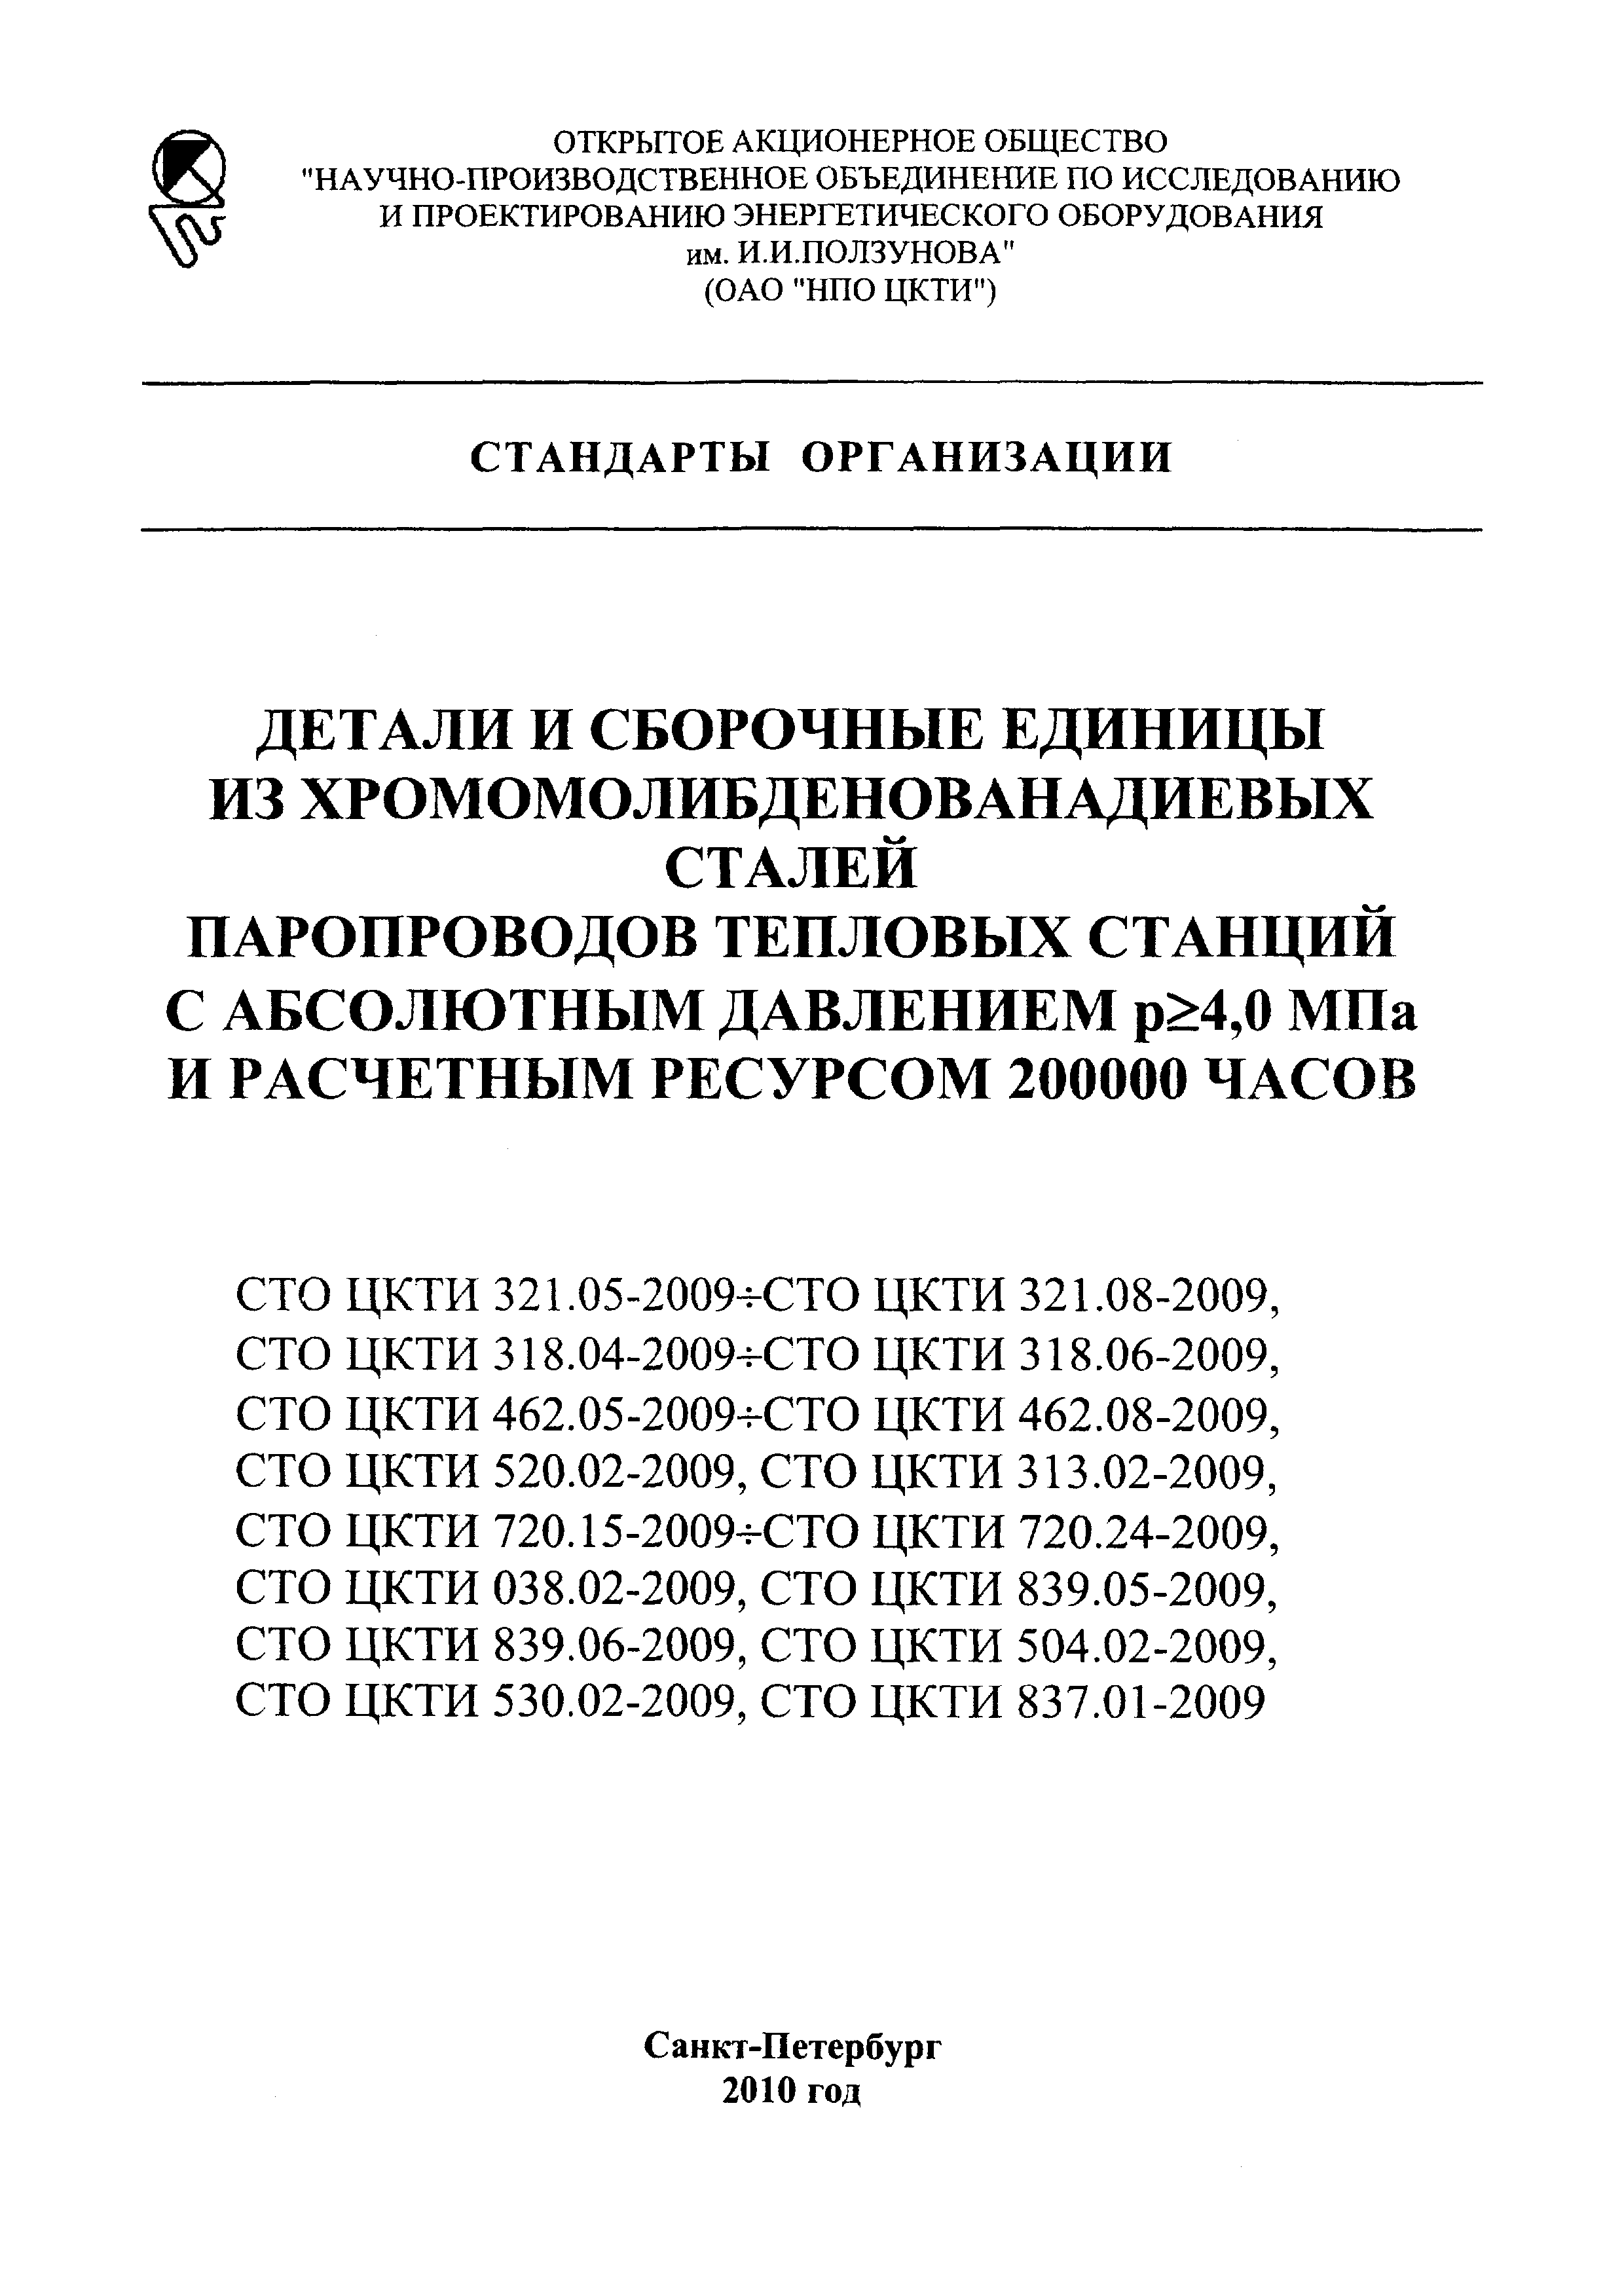 СТО ЦКТИ 720.18-2009